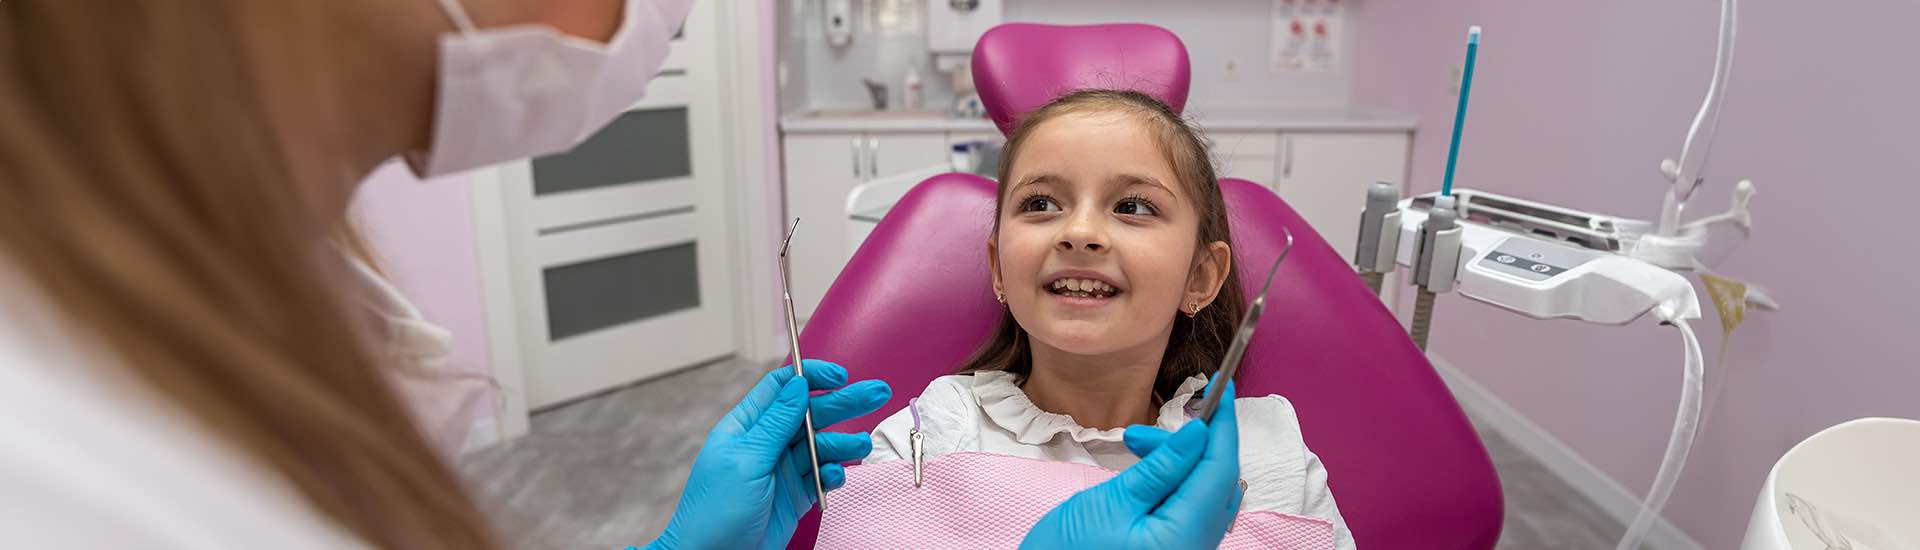 W jakim wieku dzieci potrzebują aparatu ortodontycznego?